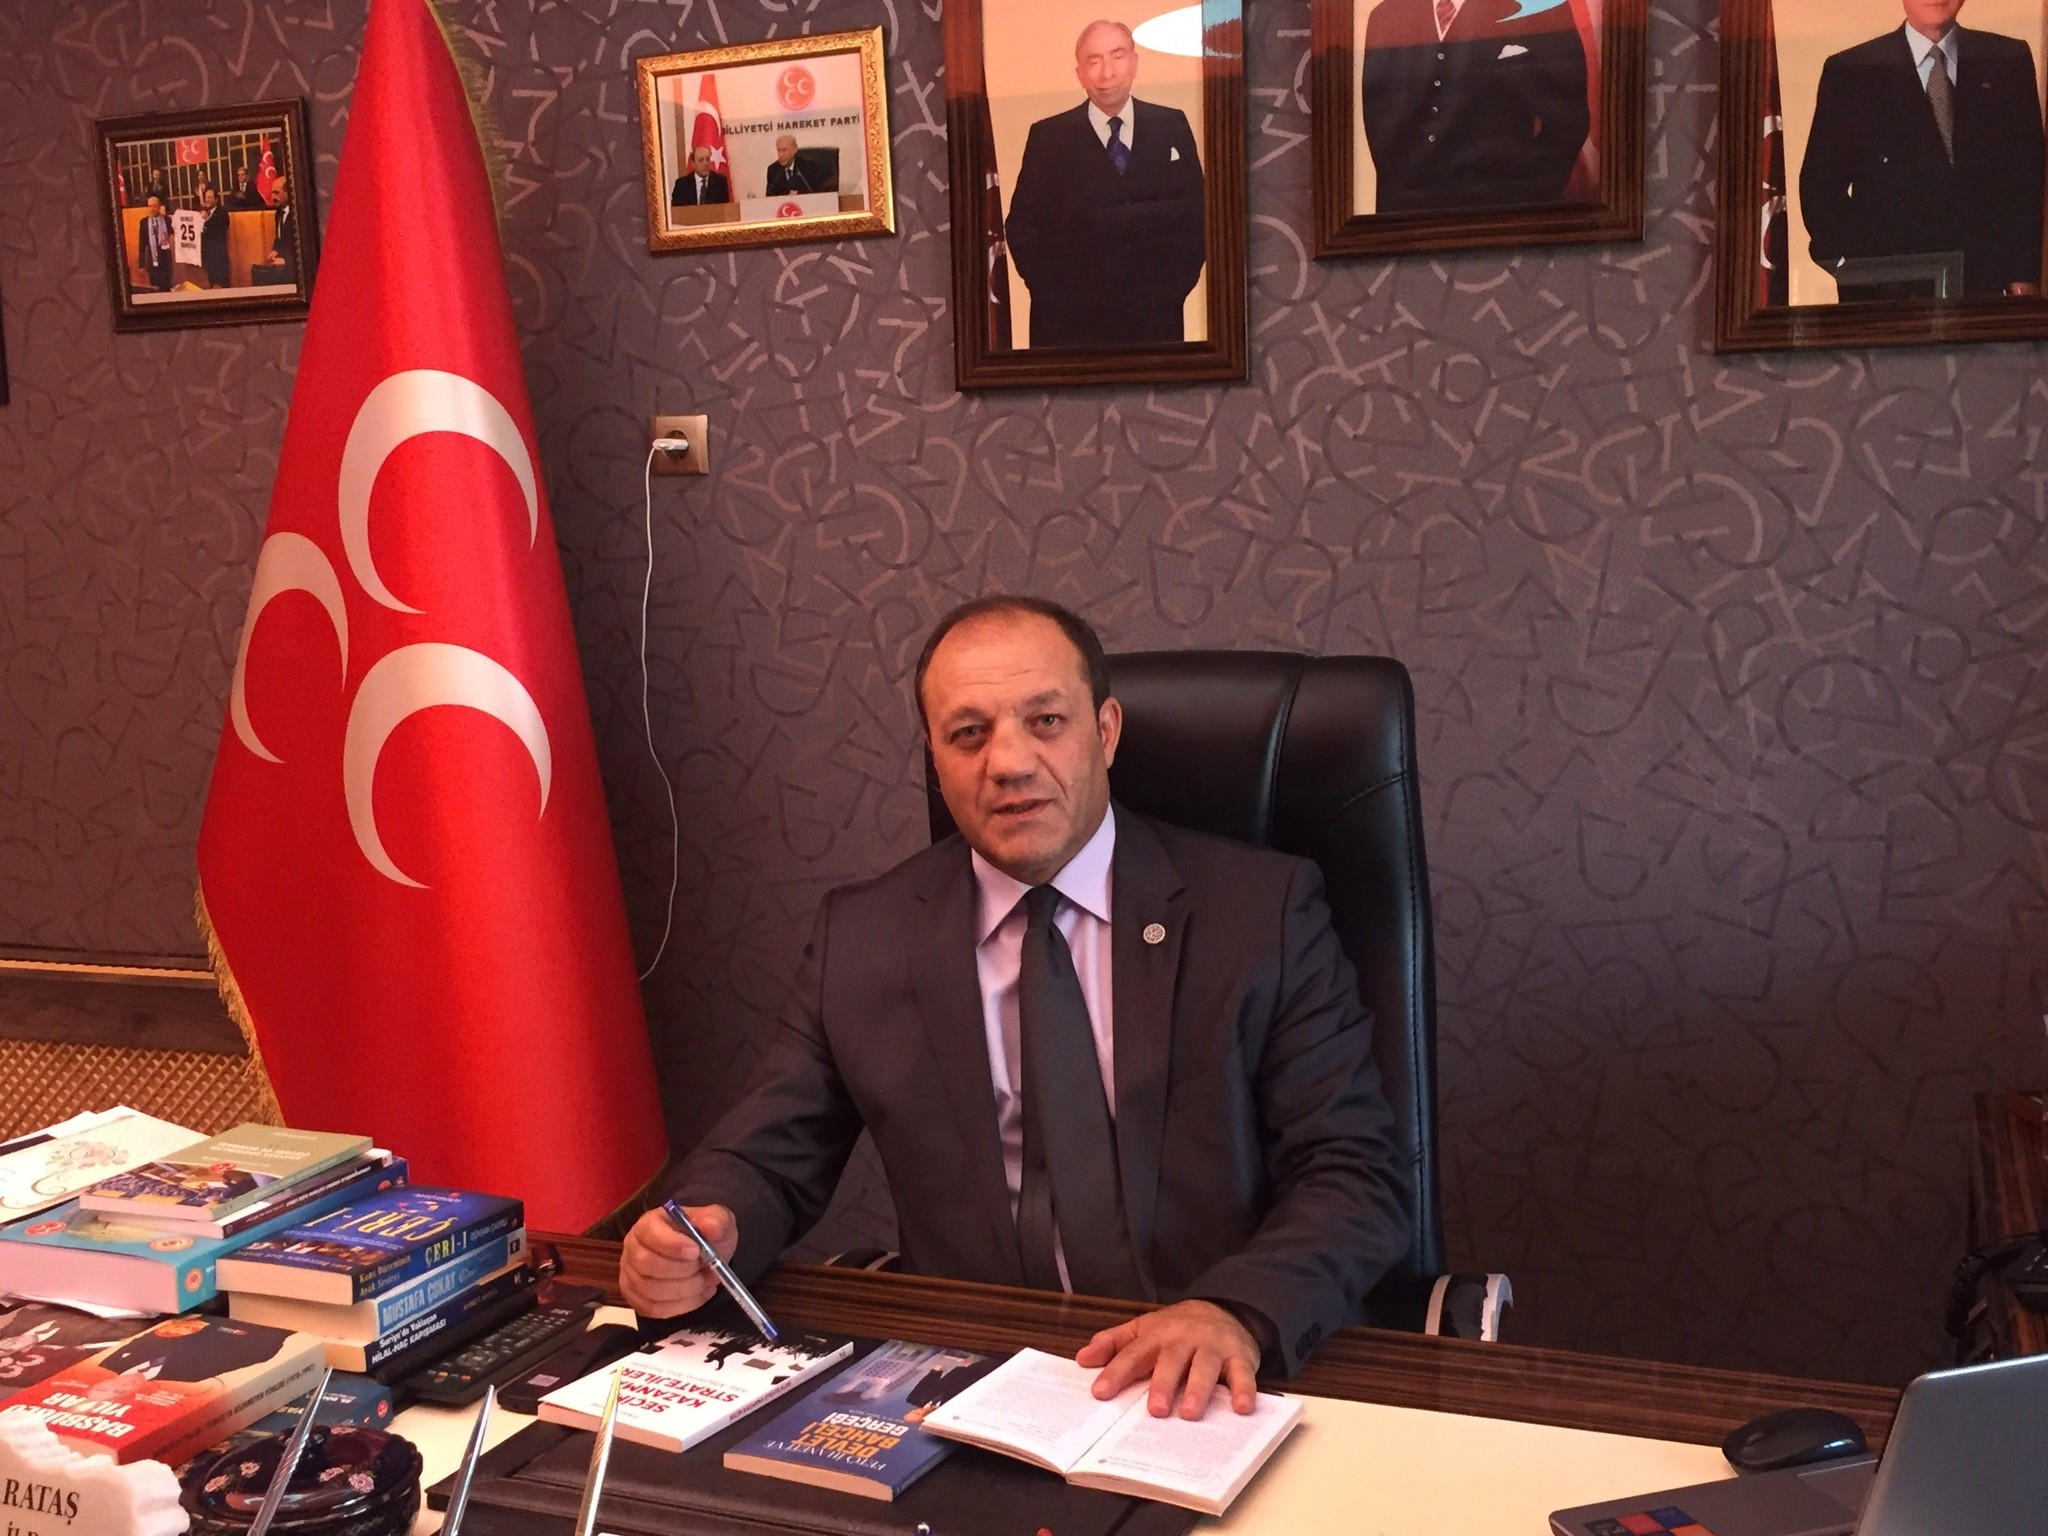 MHP İl Başkanı Karataş’tan 30 Ağustos mesajı